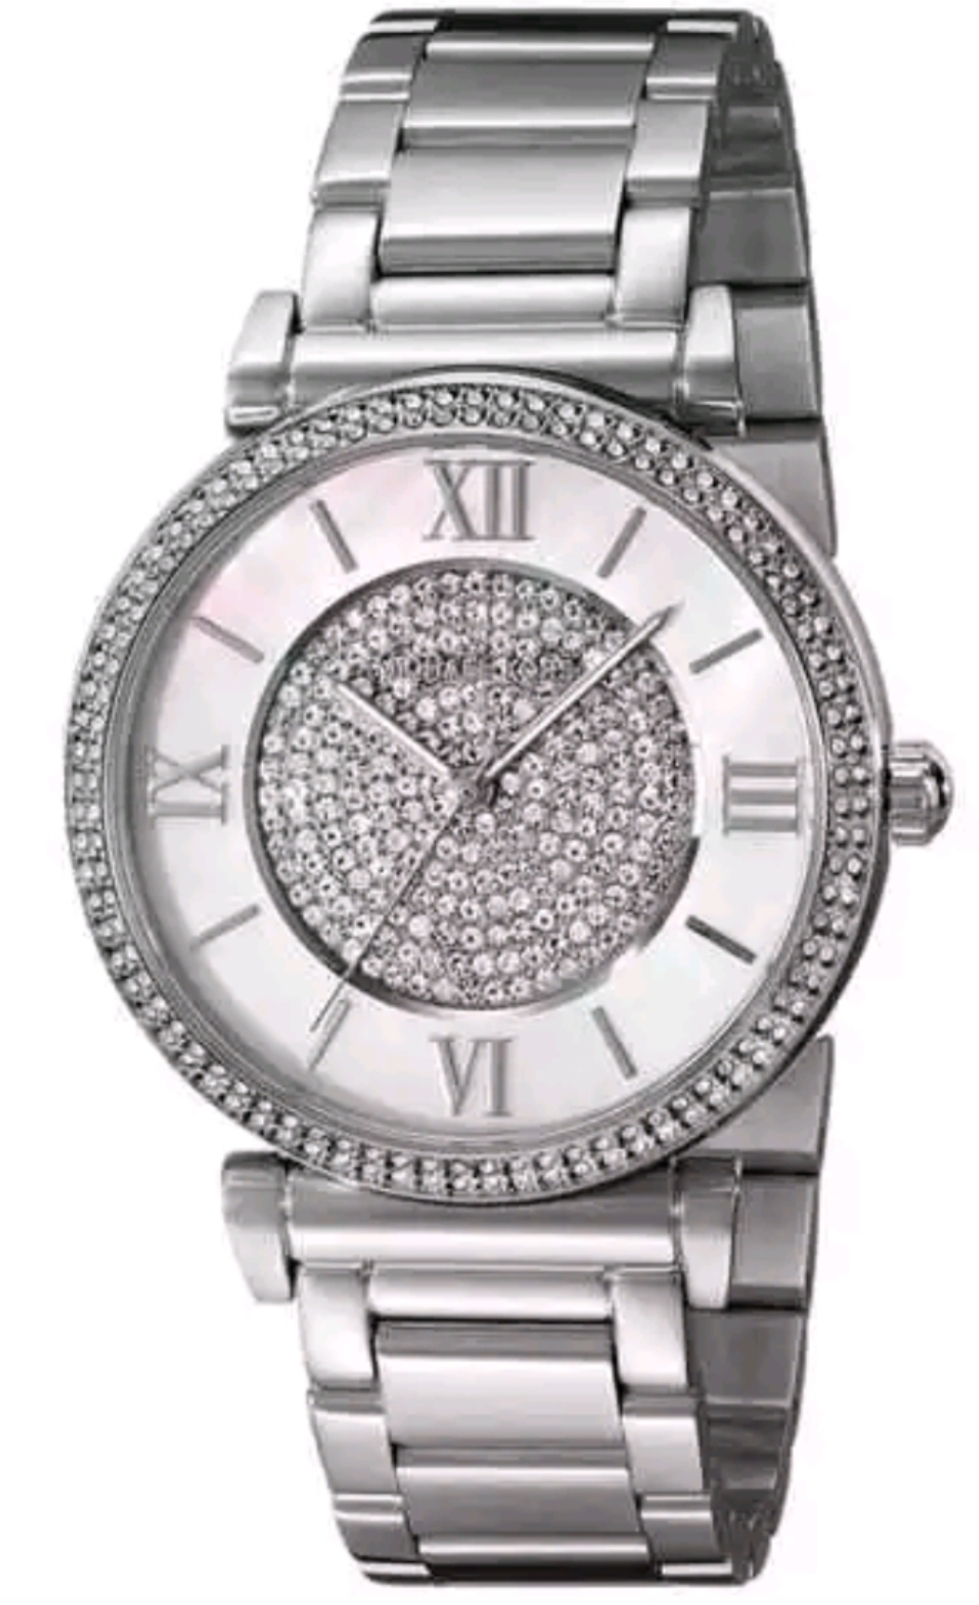 Michael Kors MK3355 Ladies Catlin Bracelet Silver Watch - Image 3 of 8